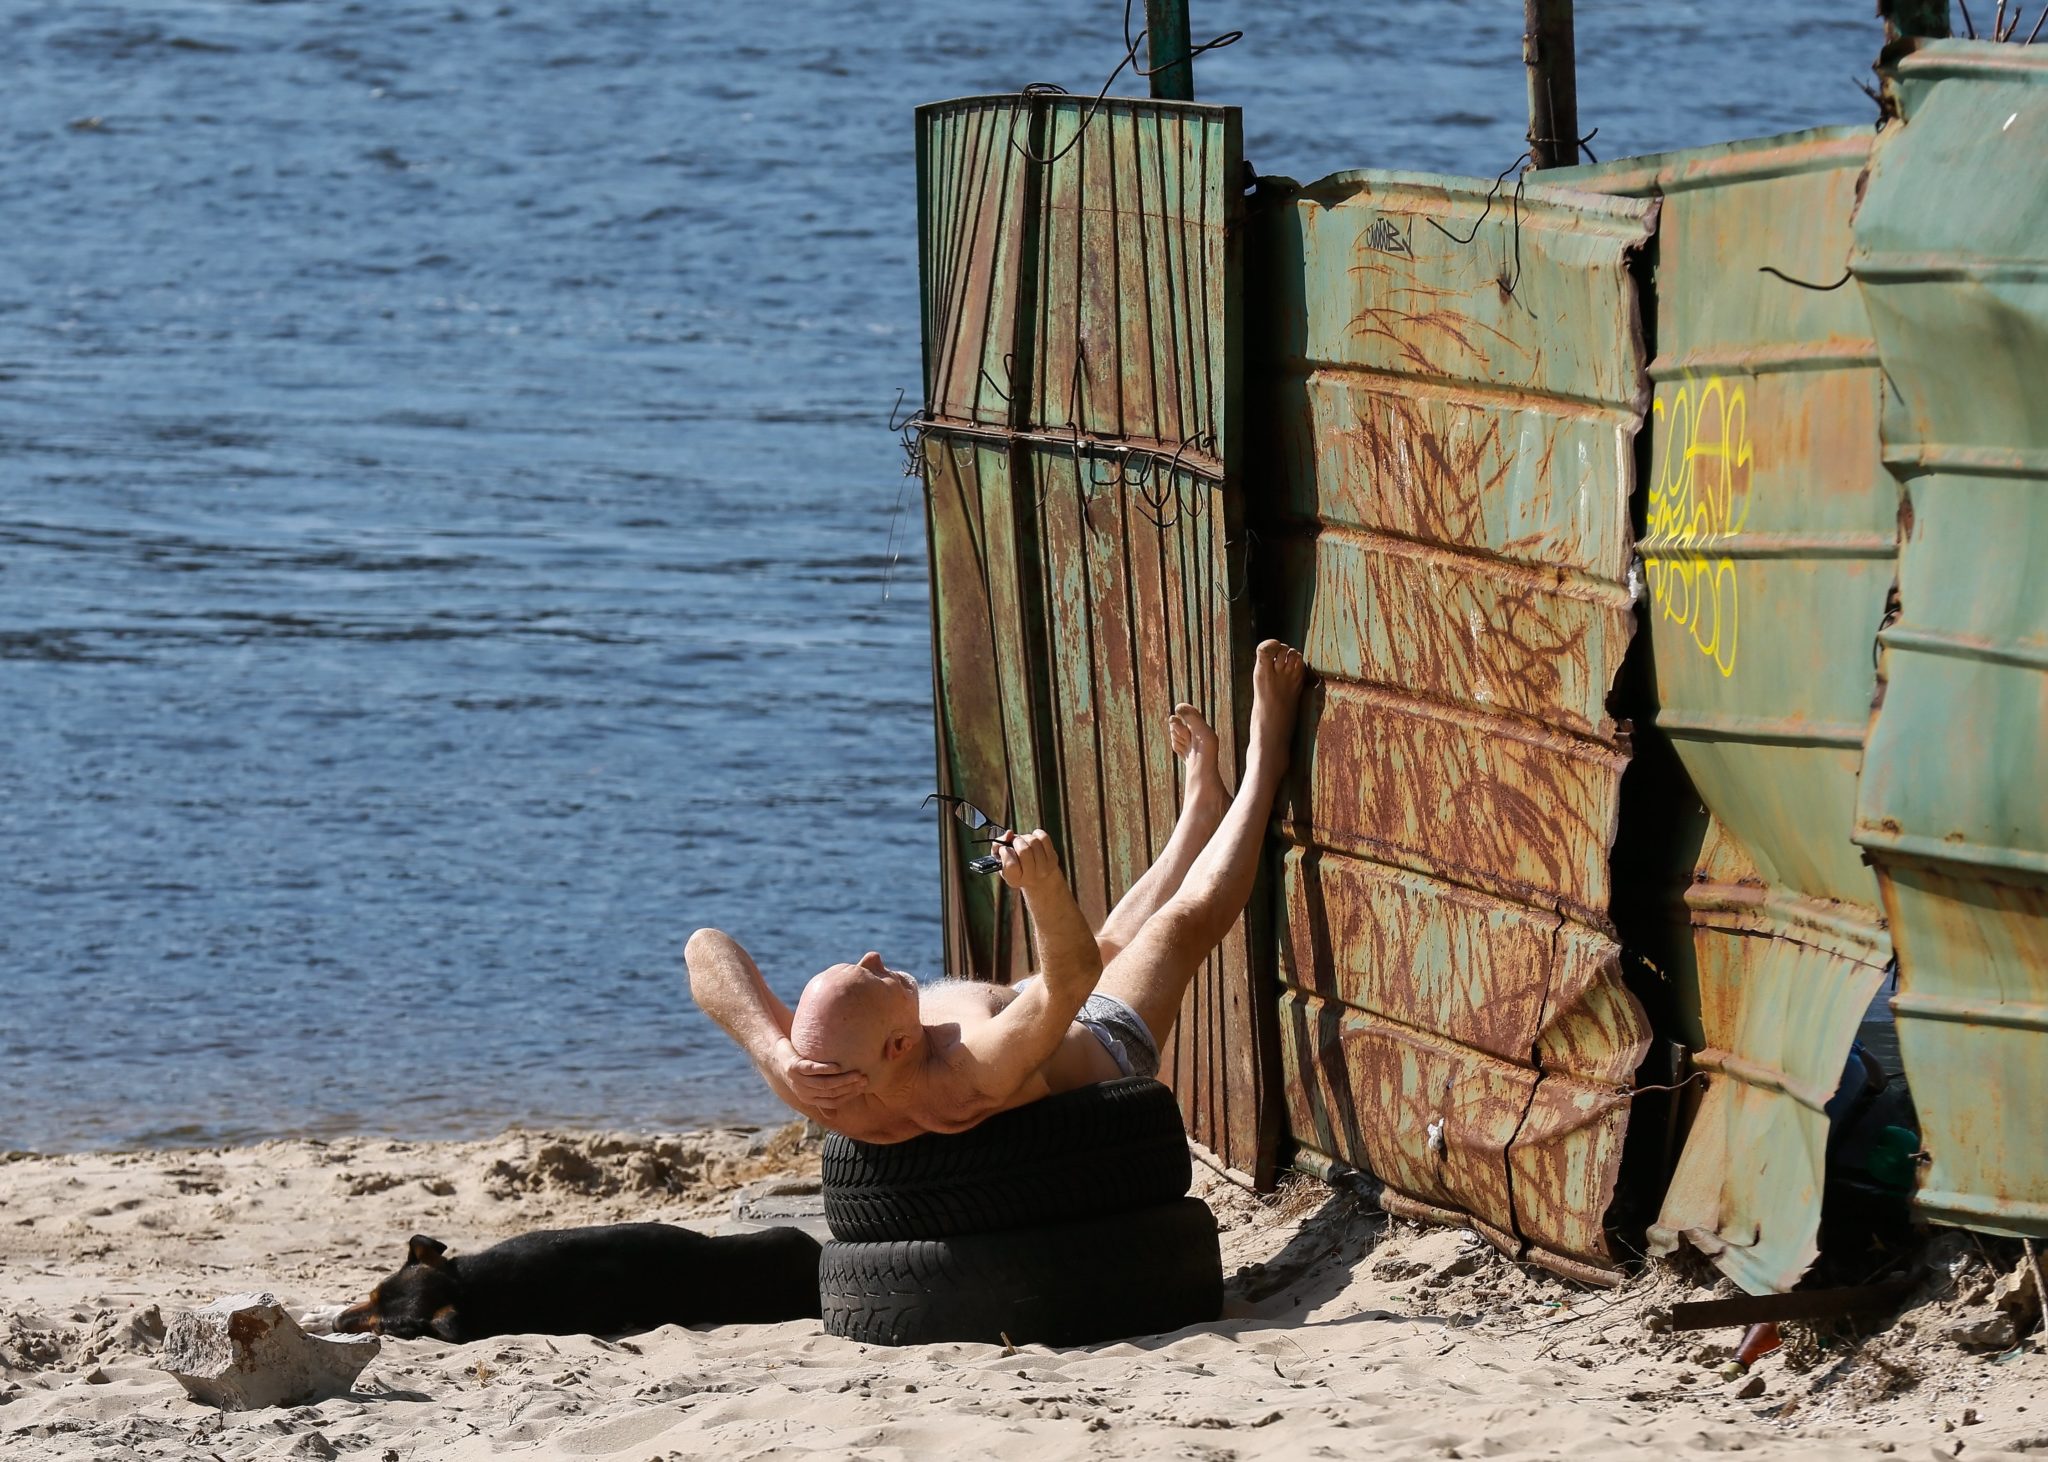 Ukraina: opalający się mężczyzna nad brzegiem rzeki Dniepr w Kijowie (foto. PAP/EPA/SERGEY DOLZHENKO)